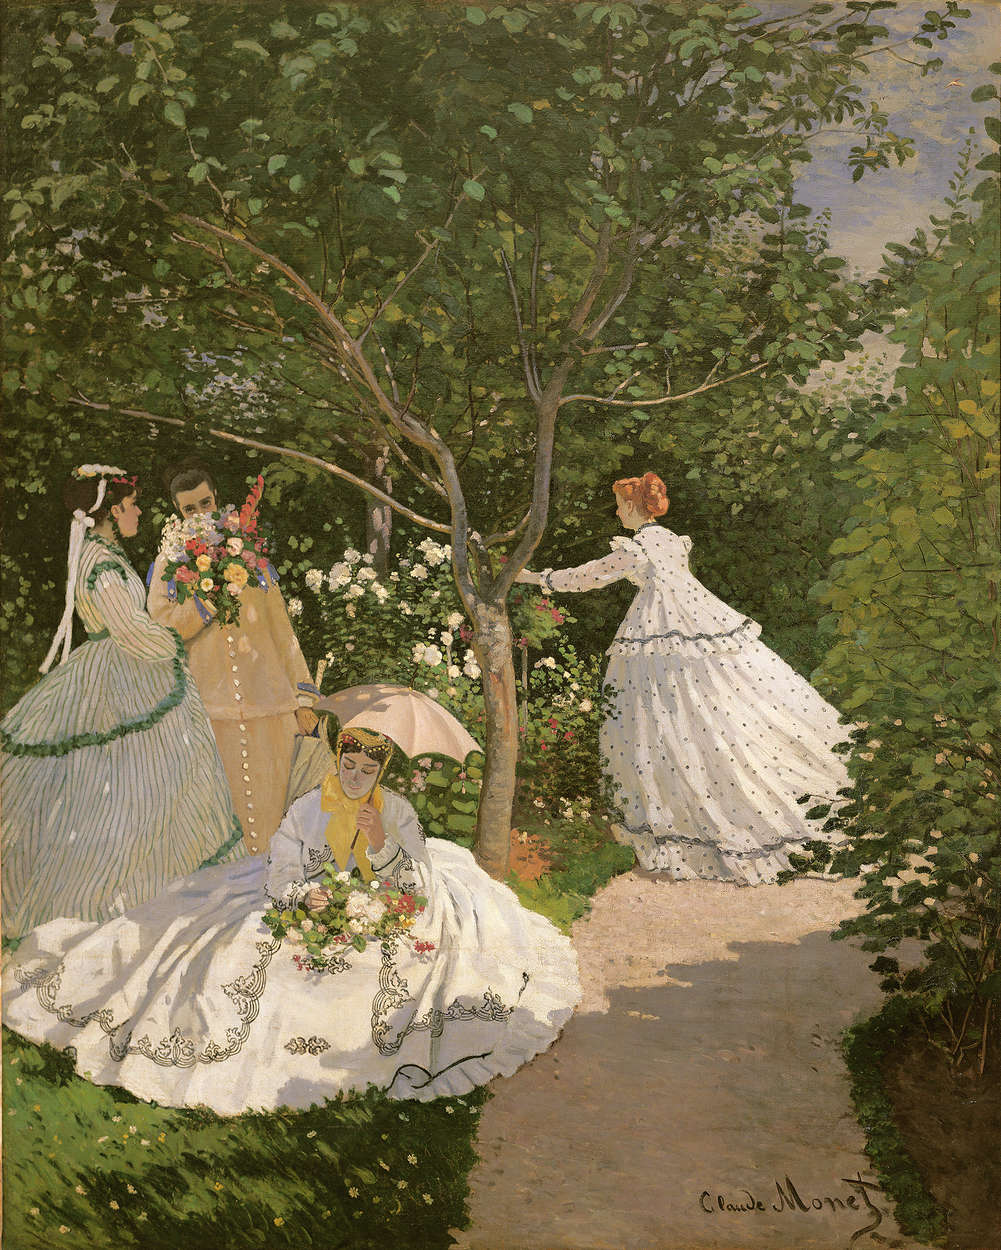             Fototapete "Frauen im Garten" von Claude Monet
        